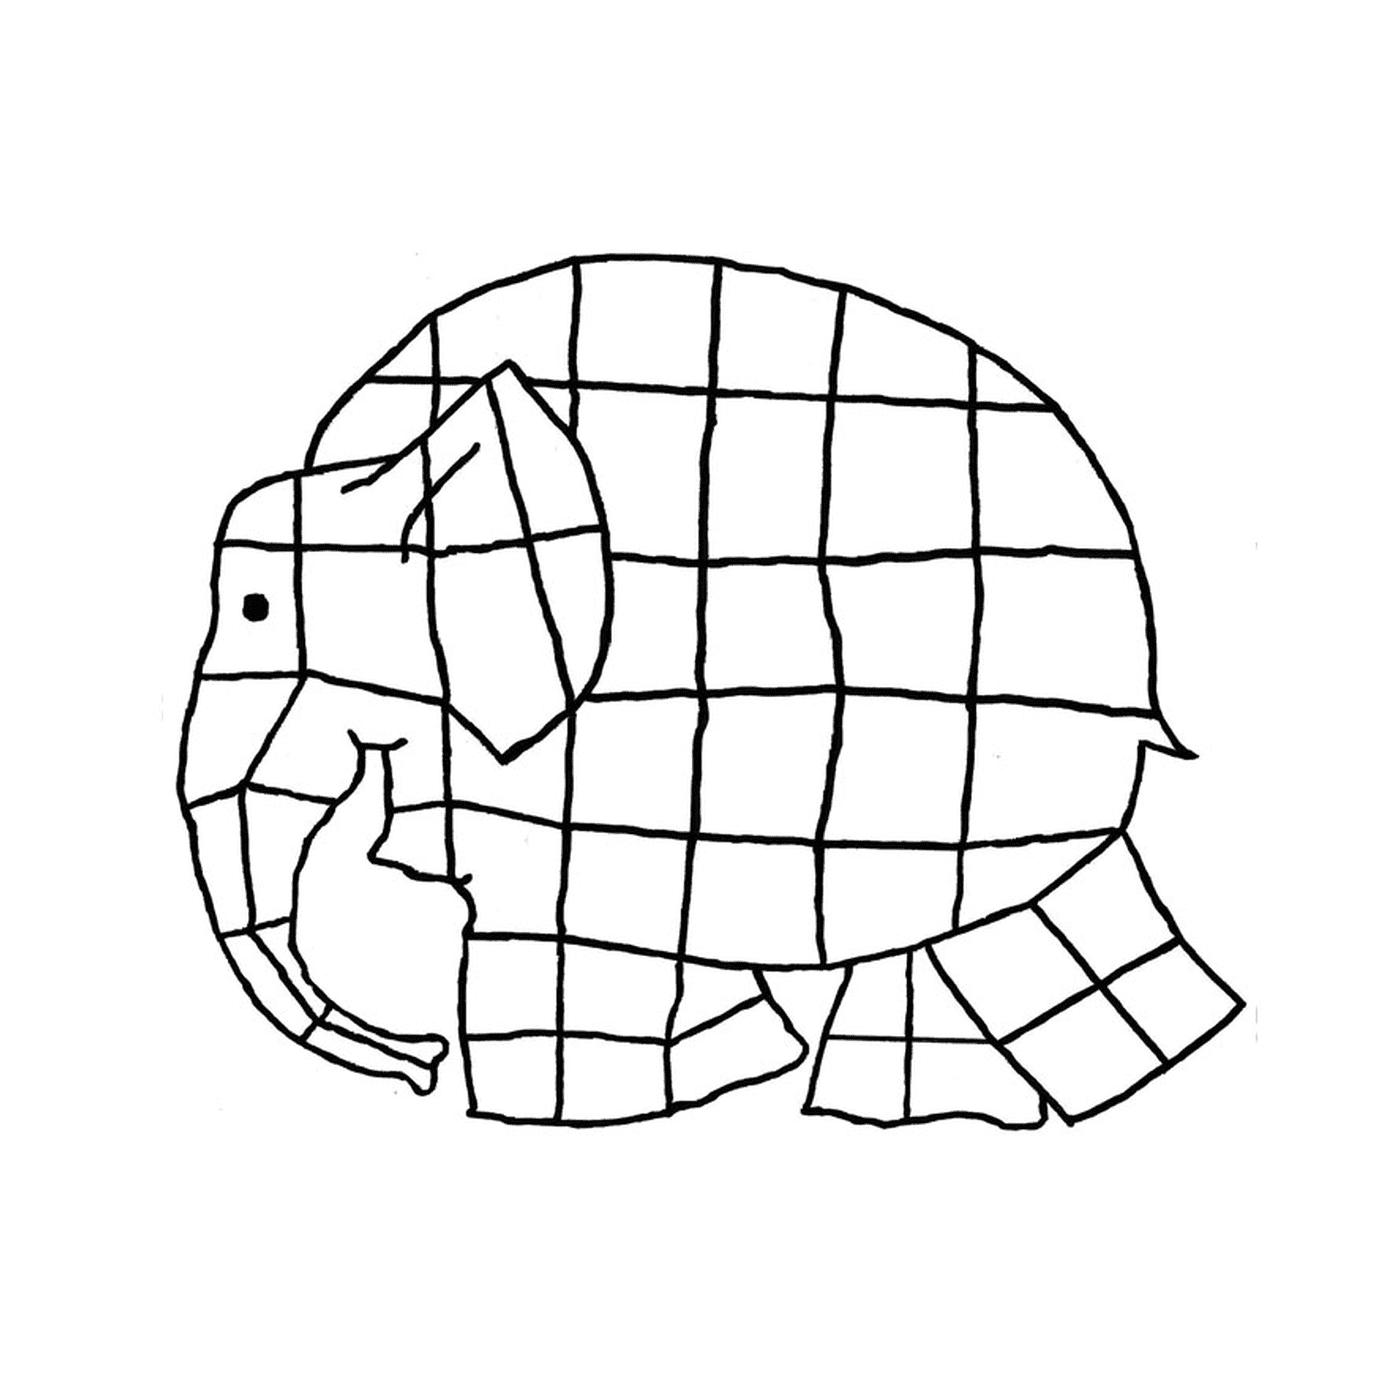  Un elefante fatto di quadrati 